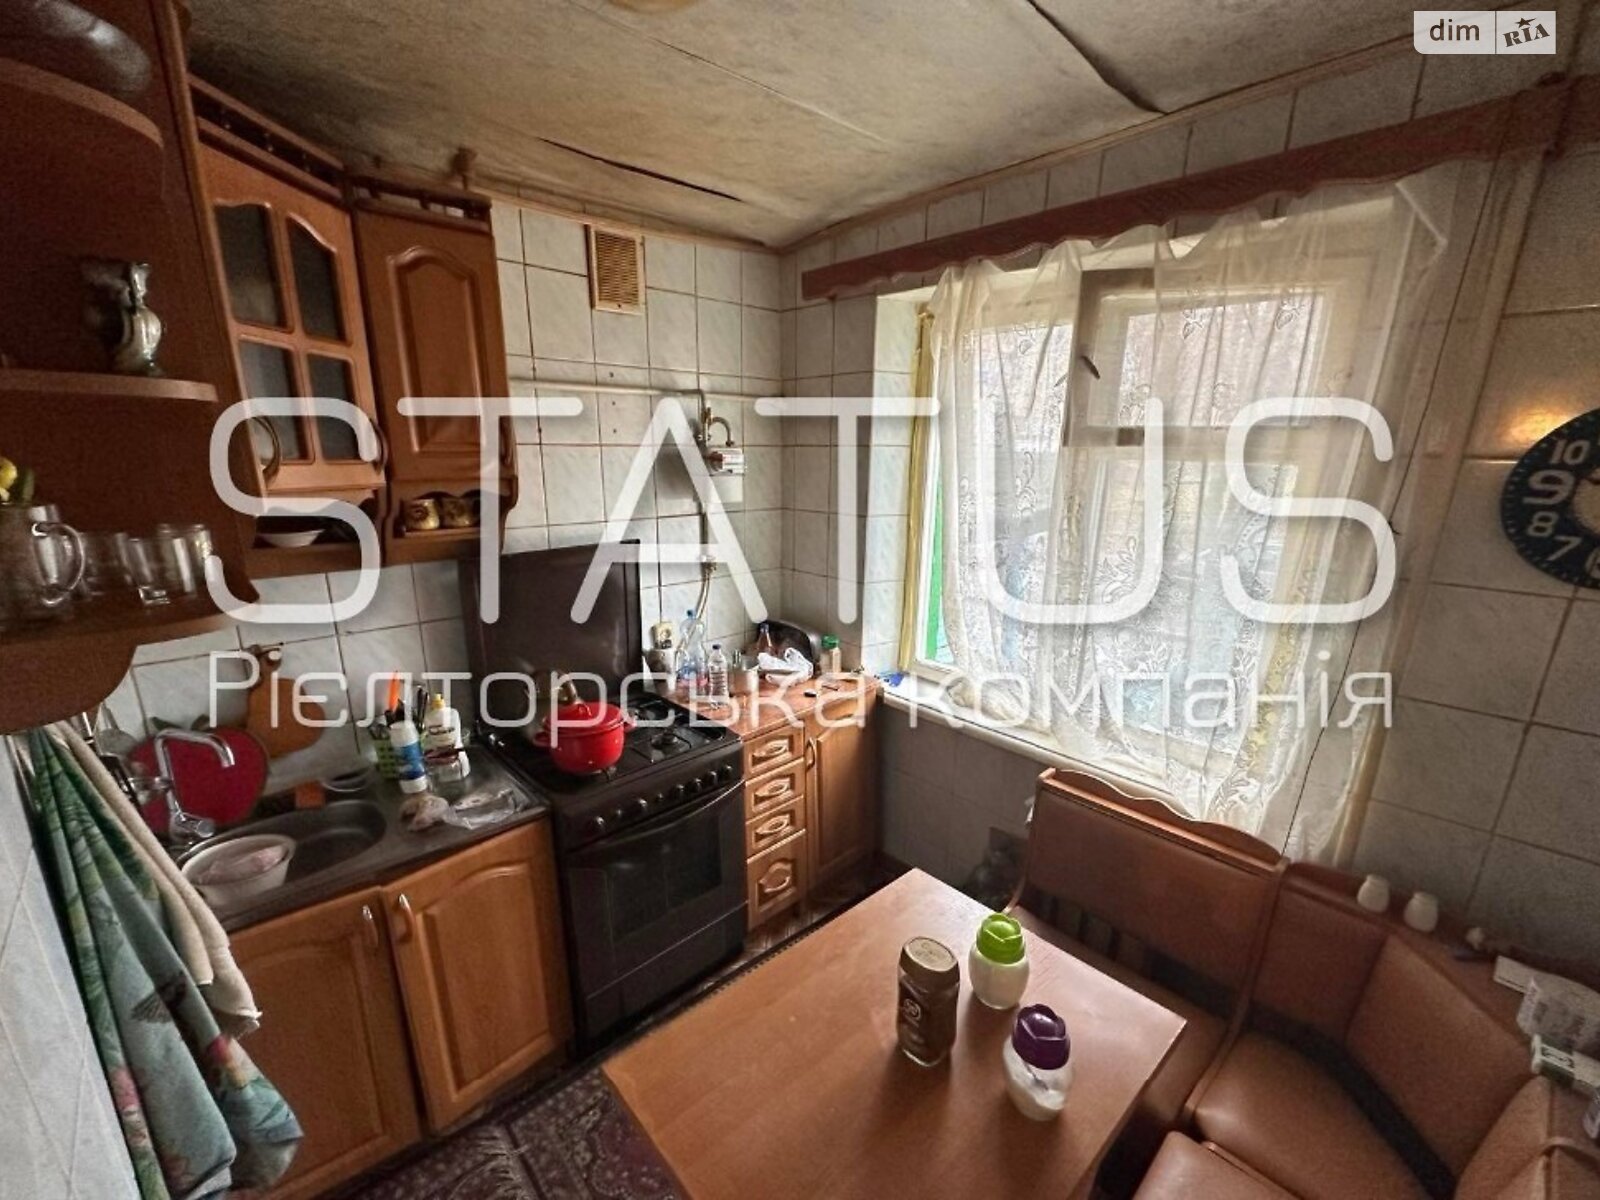 Продажа двухкомнатной квартиры в Полтаве, на ул. 23-в сентябре, район Алмазный фото 1